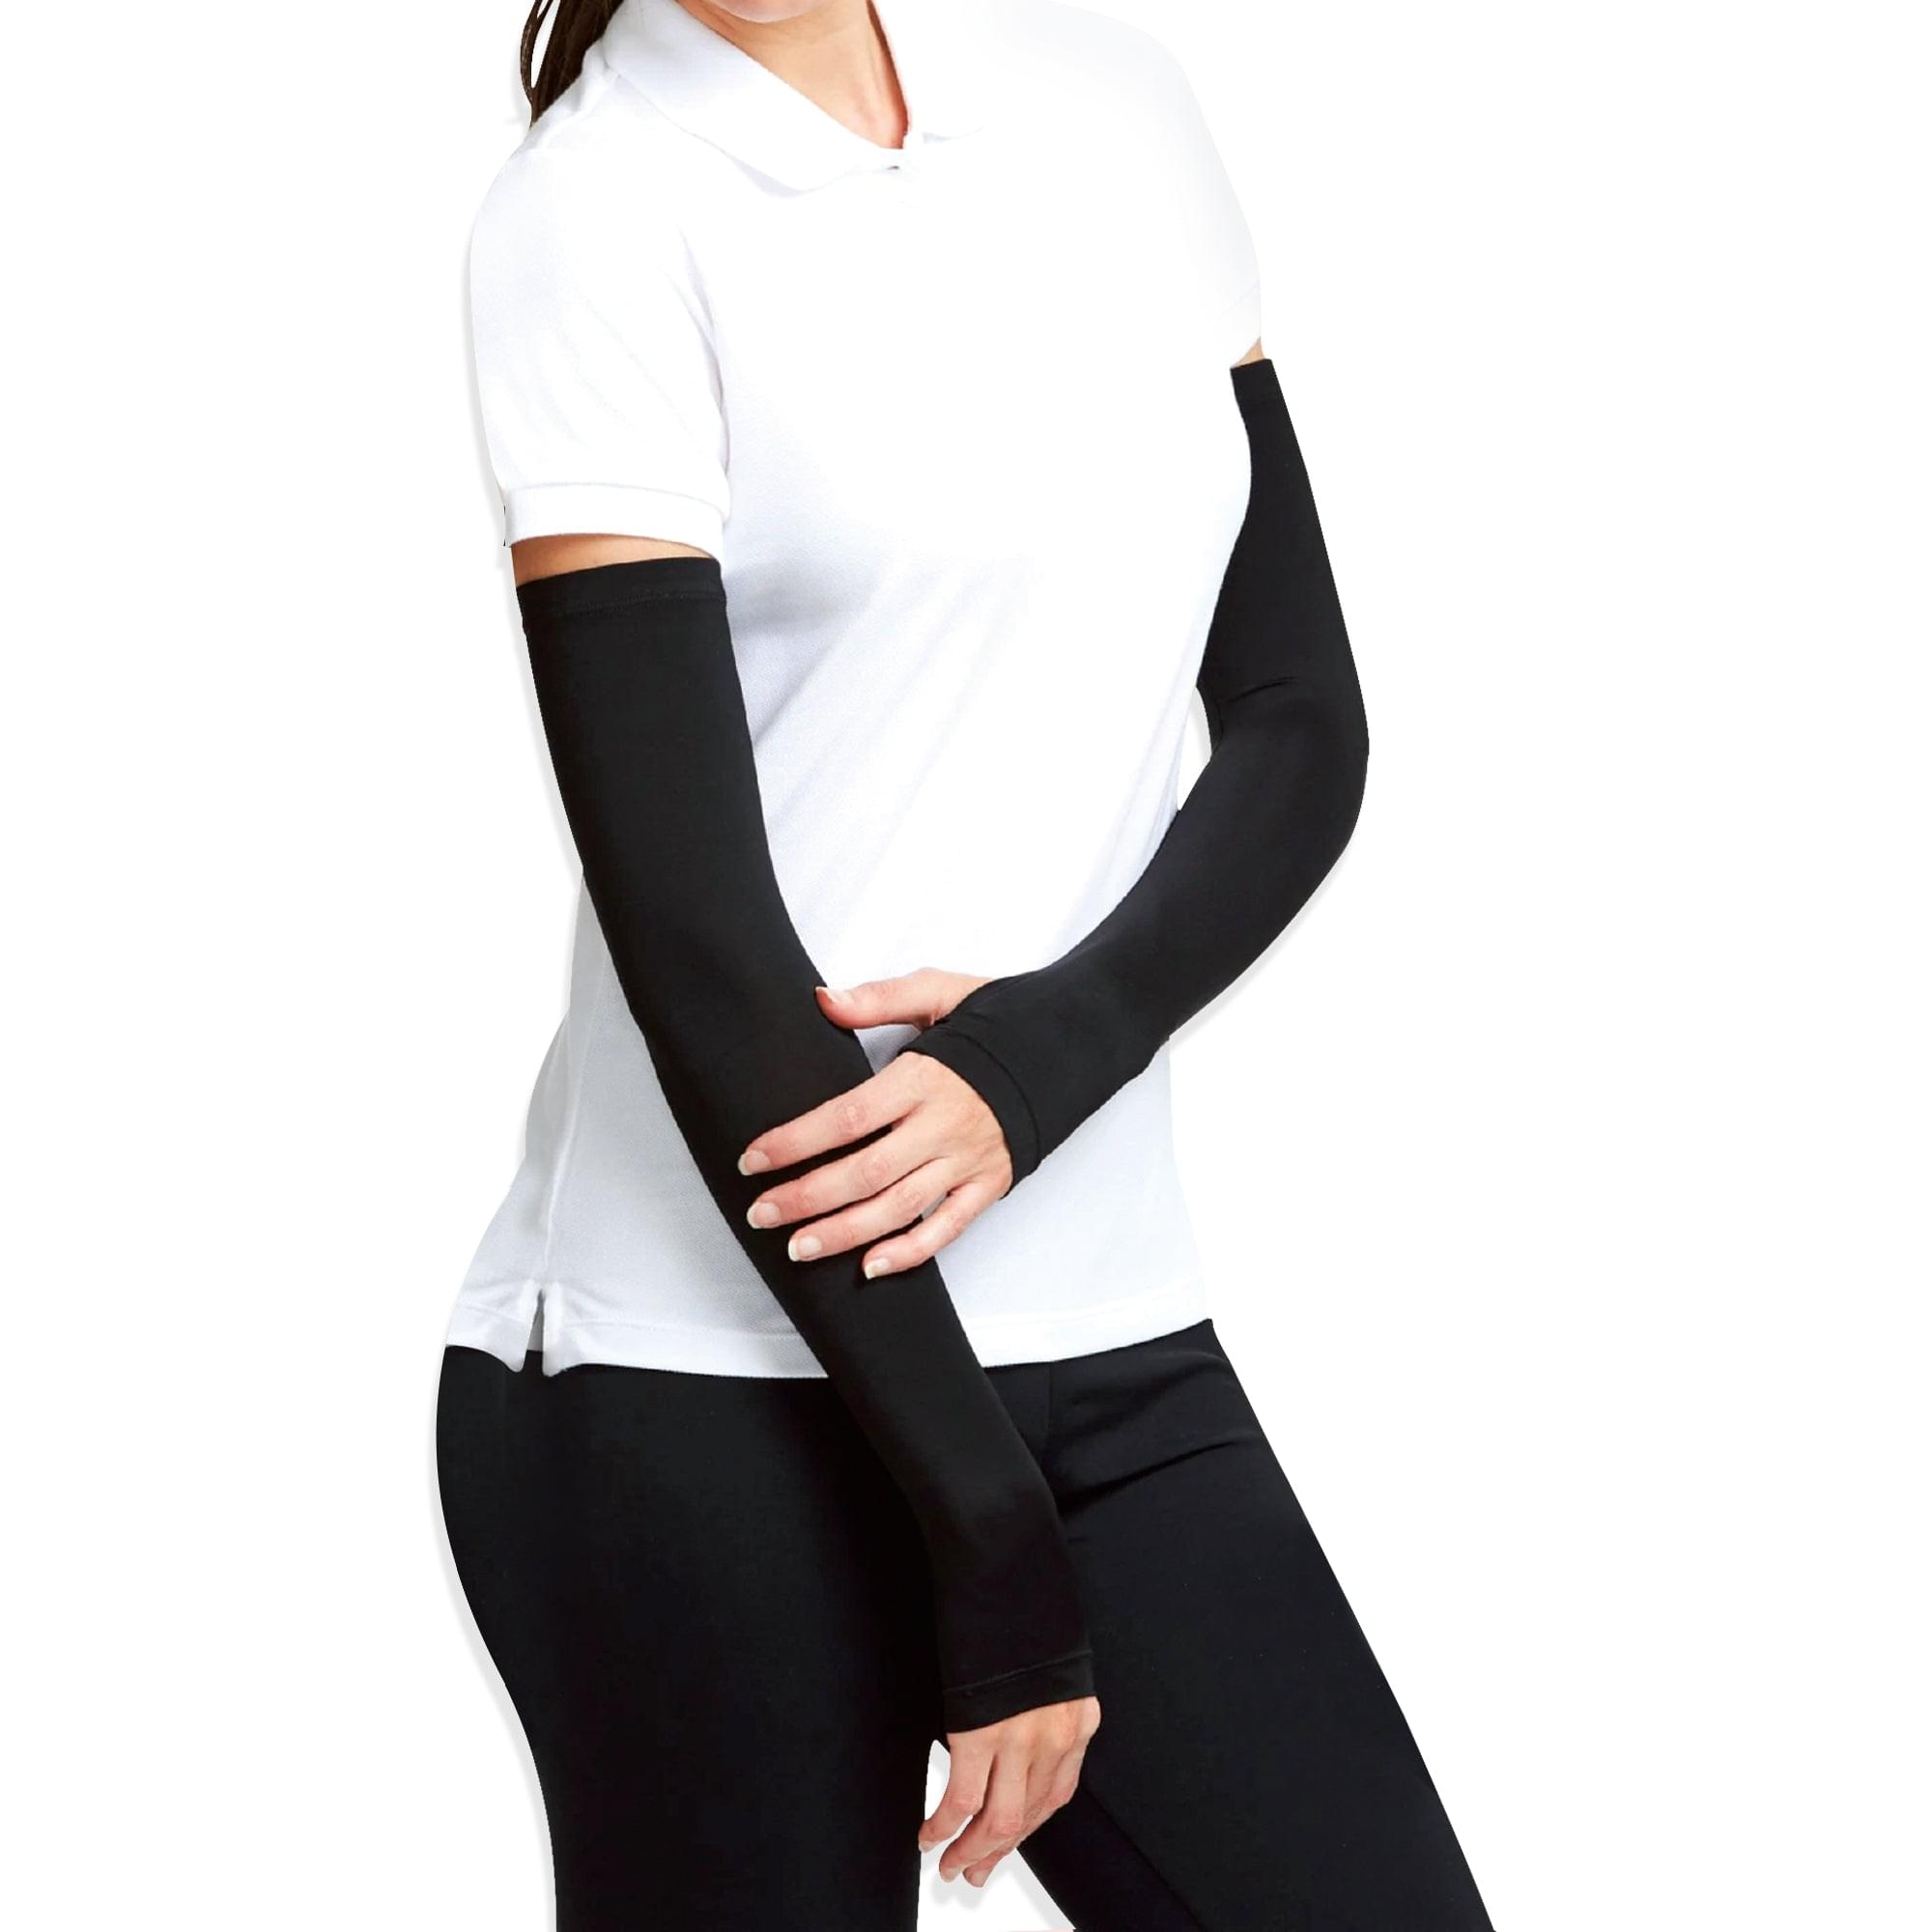 Antibacterial Arm Protectors/Sleeves for Women (Pack of 1 - Pair, UPF 50+)